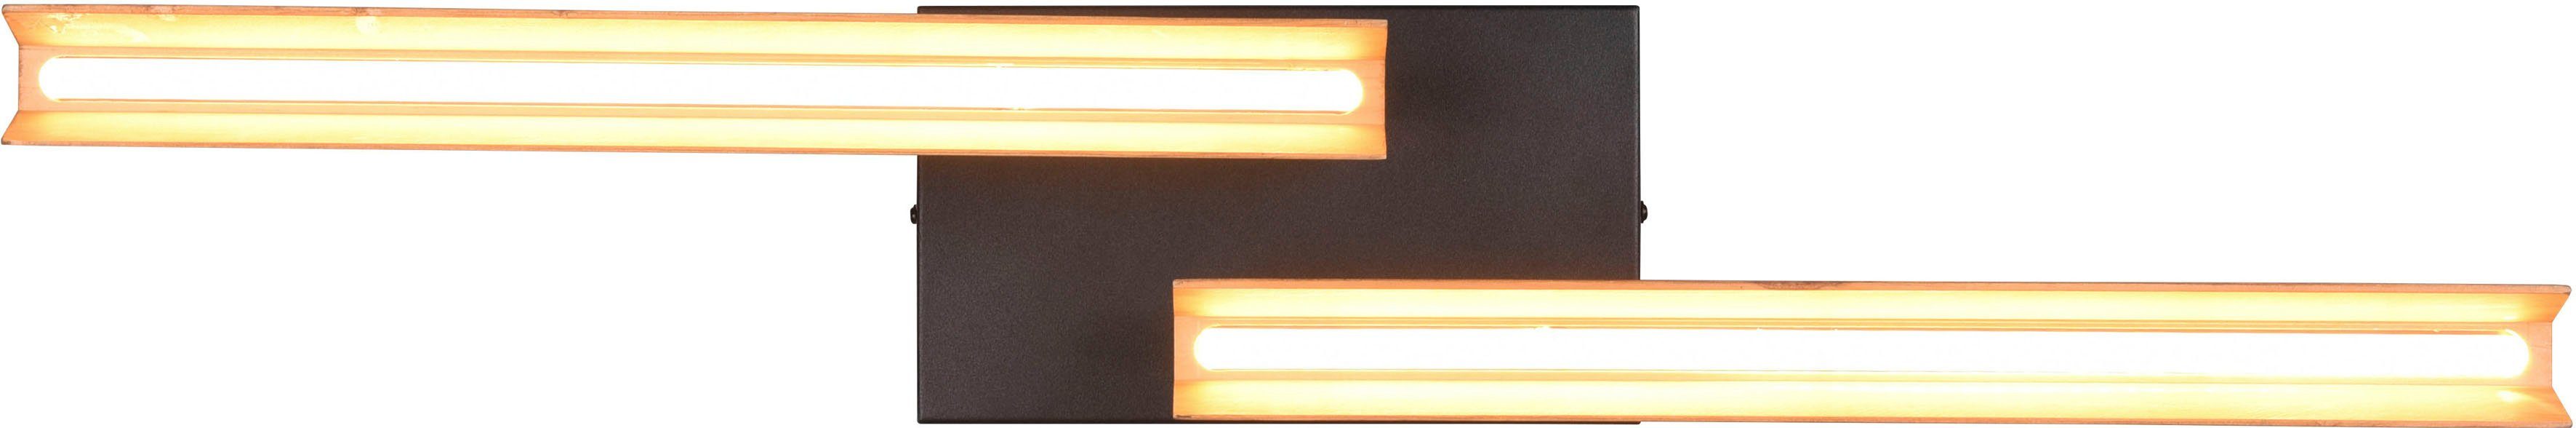 LED 3 Holz LED + Dimmfunktion, Deckenlampe TRIO integriert, warmweiß Leuchten fest LED Kerala, Metall, Deckenleuchte aus Dimmstufen, schwenkbar, mehrere Helligkeitsstufen, Warmweiß,